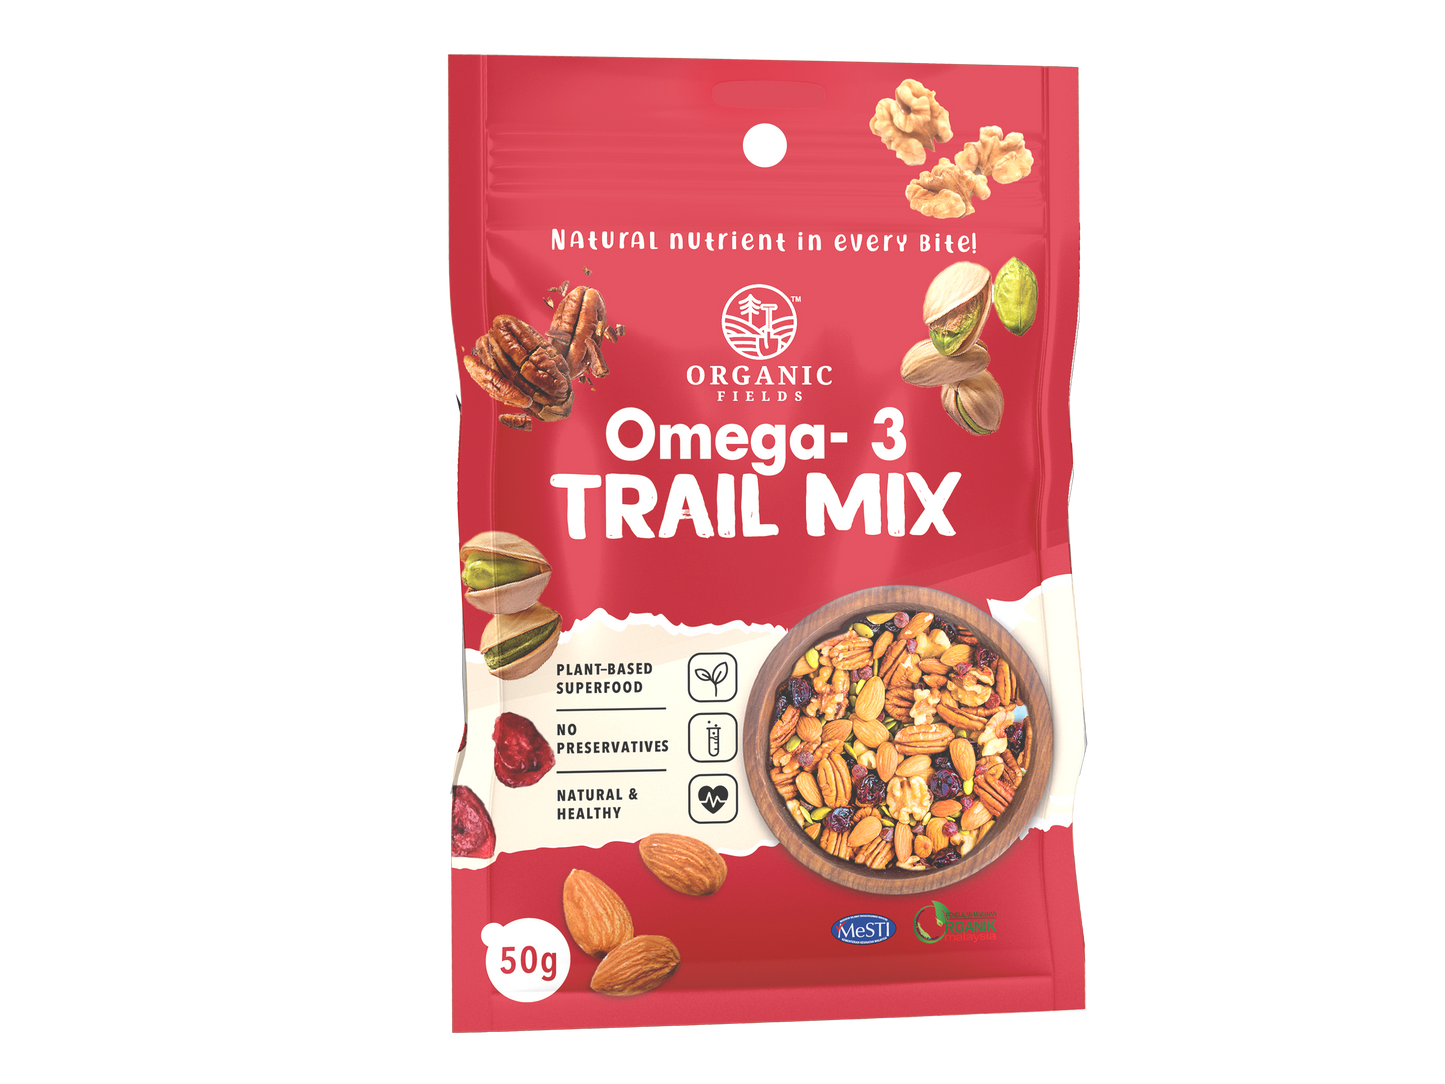 Omega-3 Trail Mix